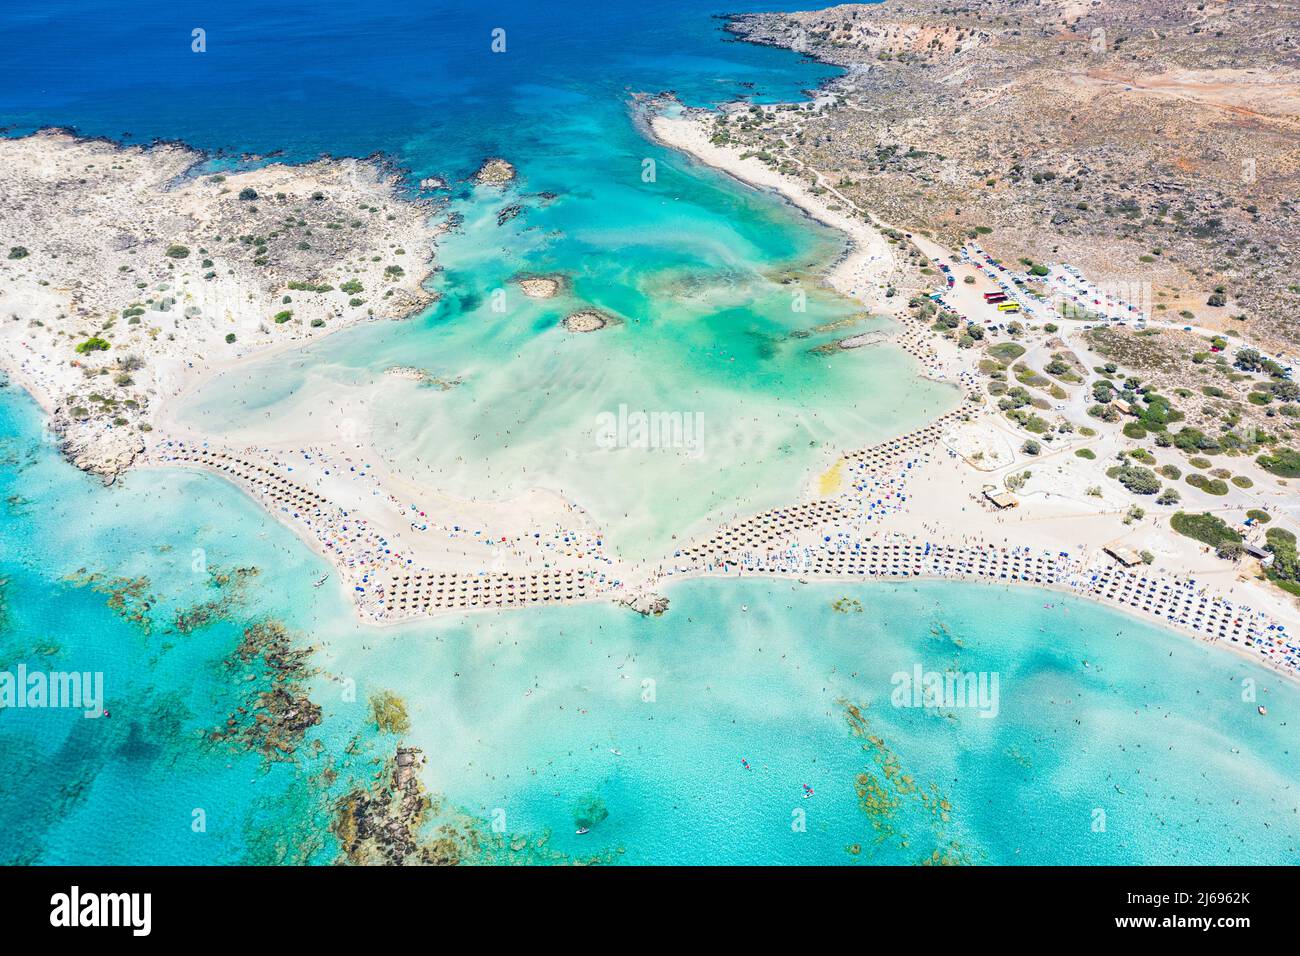 Vue aérienne de la plage Élafonissi équipée située dans le lagon turquoise préservé, île de Crète, îles grecques, Grèce Banque D'Images